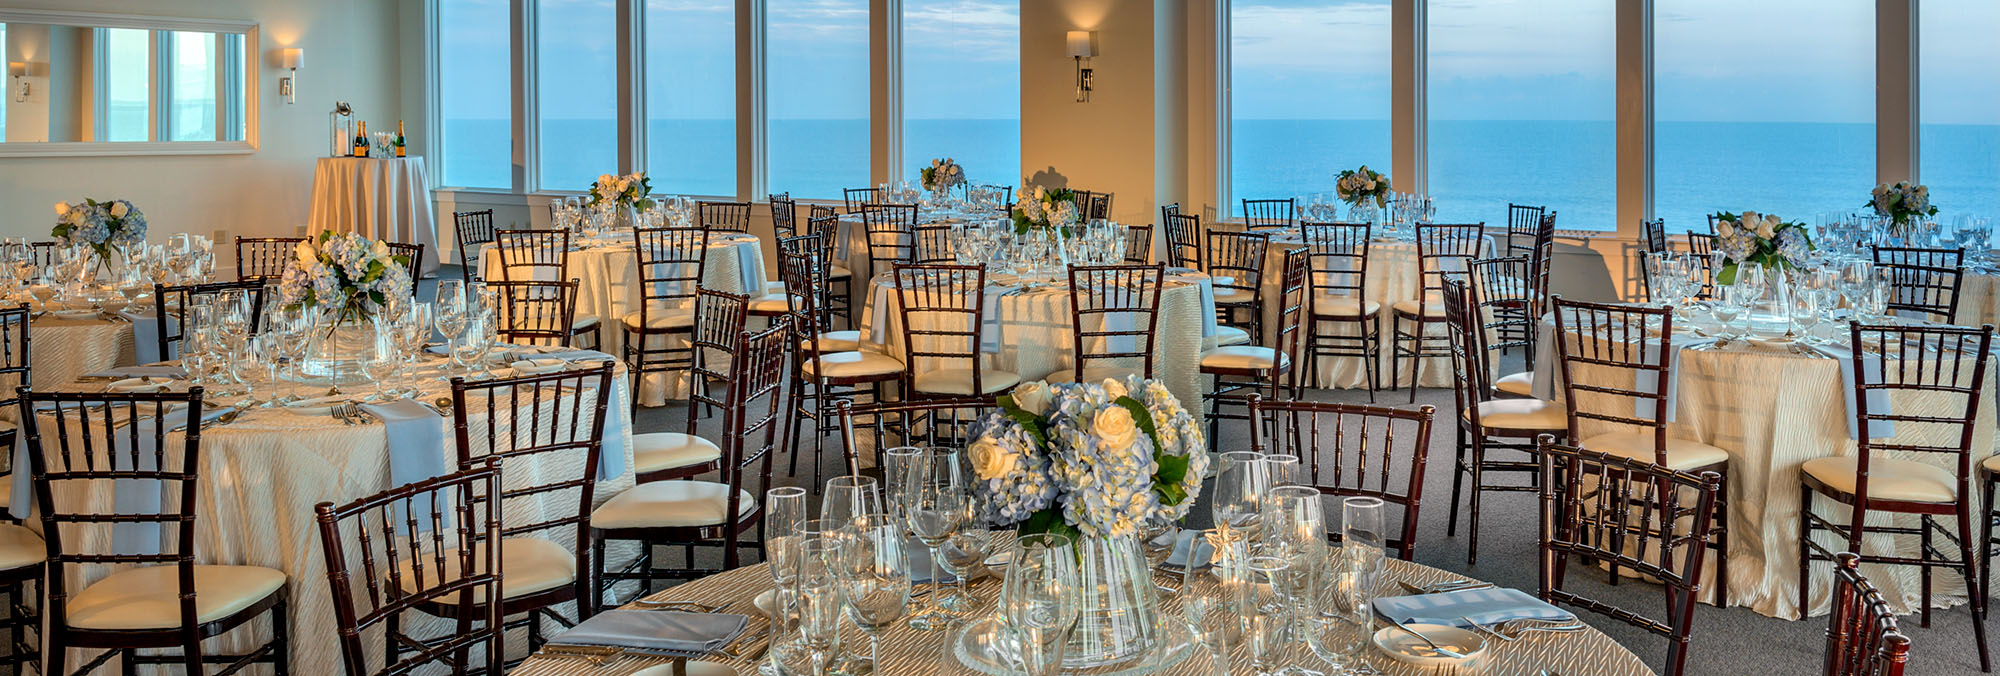 Atlantic Ballroom Panoramic of Room with Ocean Views